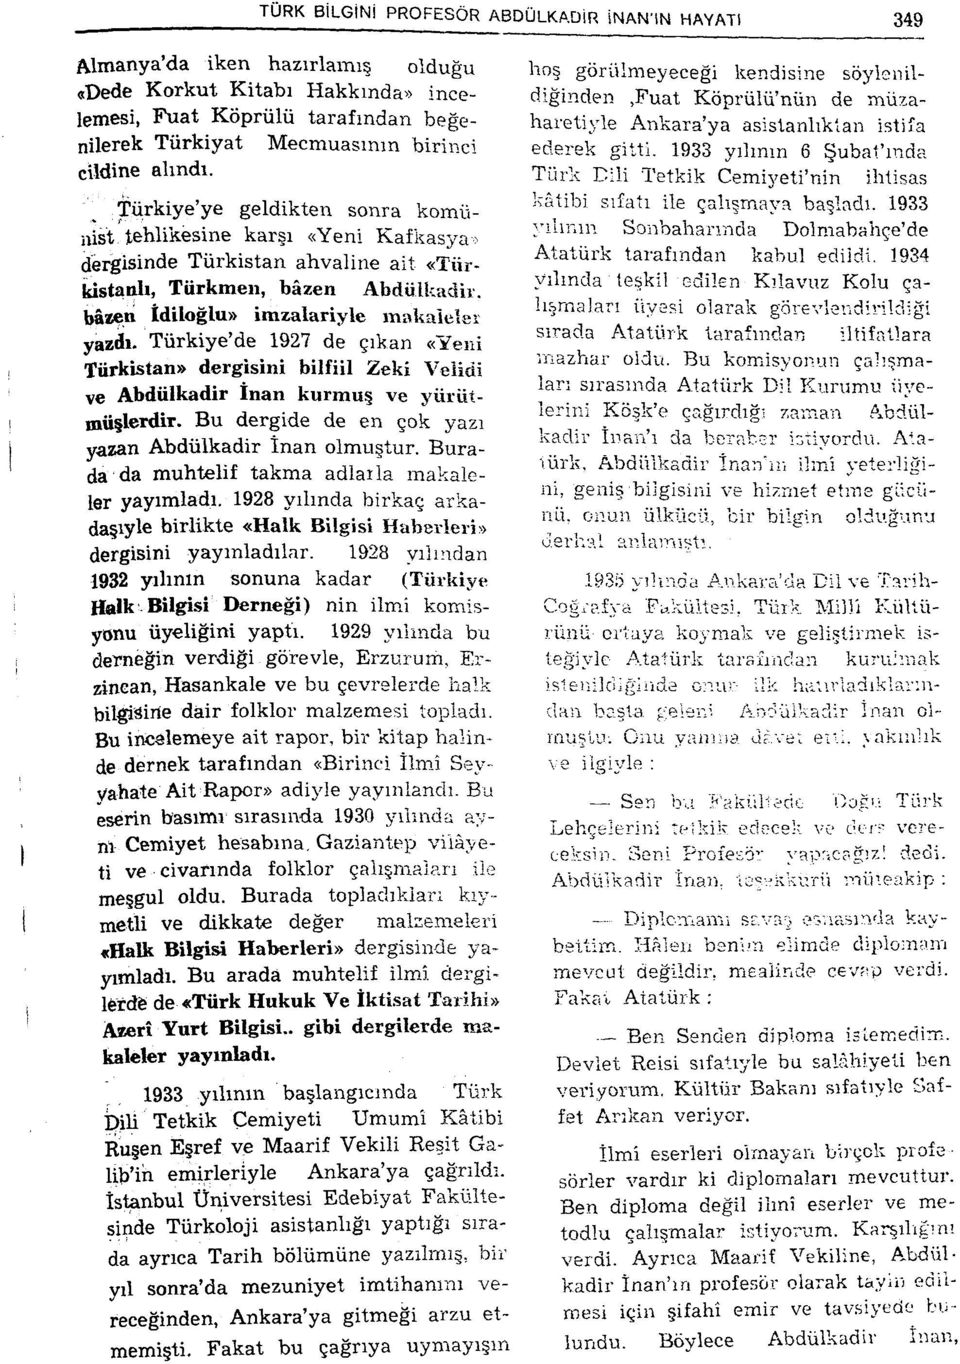 bâzeni tdiloğlu» imzalariyle mivkaieler yazdı. Türkiye'de 1927 de çıkan «Yeni Türkistan» dergisini bilfiil Zeki Veîidi ve Abdülkadir İnan kurmuş ve yürütmüşlerdir.